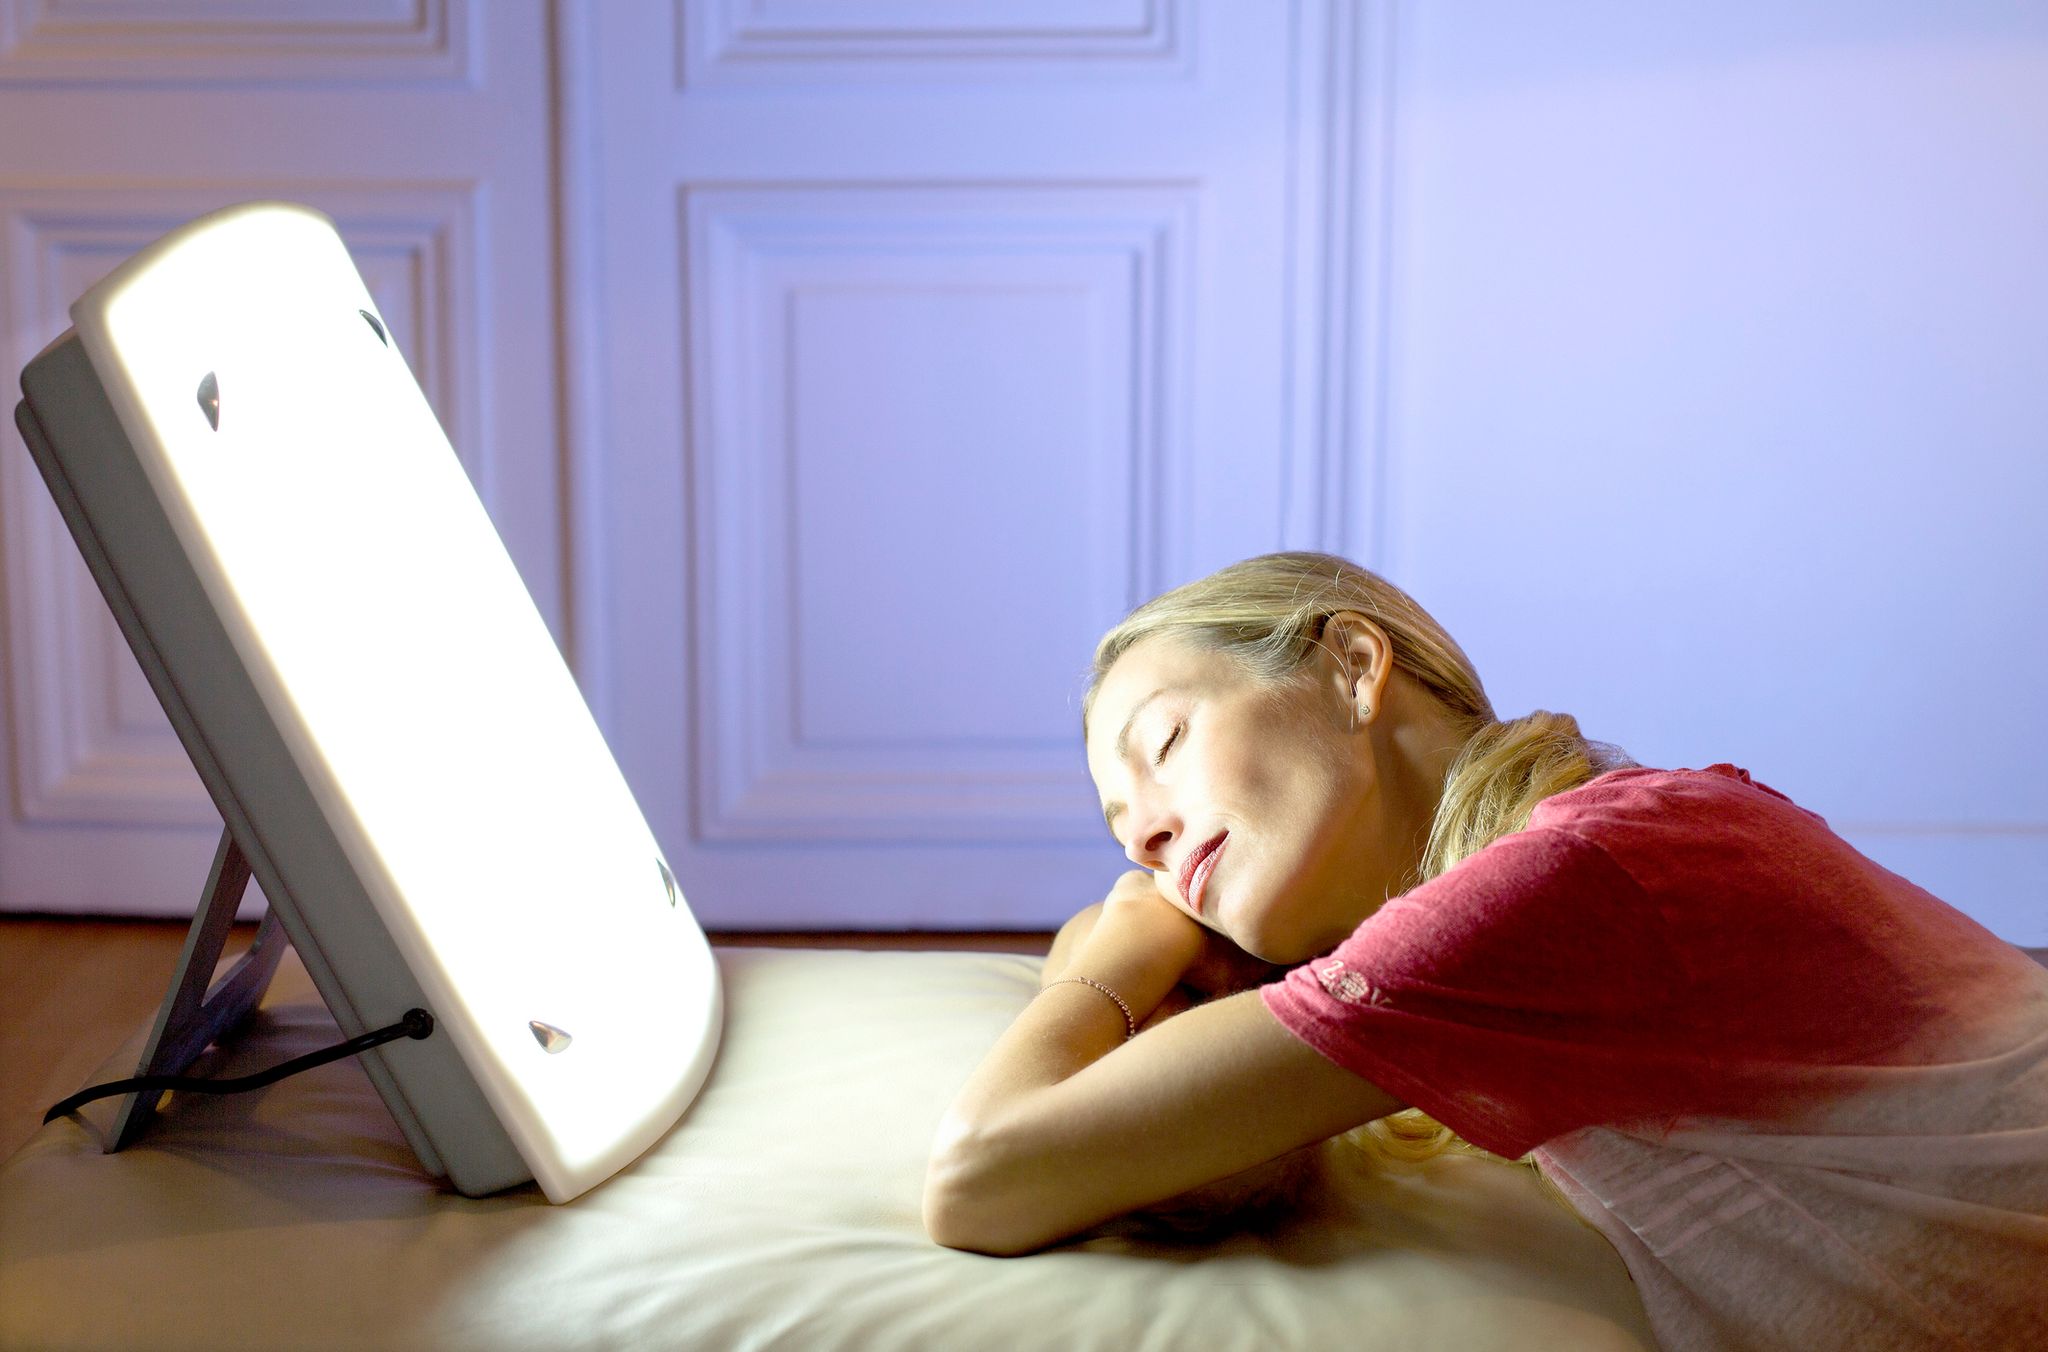 Lampe luminothérapie: une solution contre la dépression saisonnière? –  L'Express